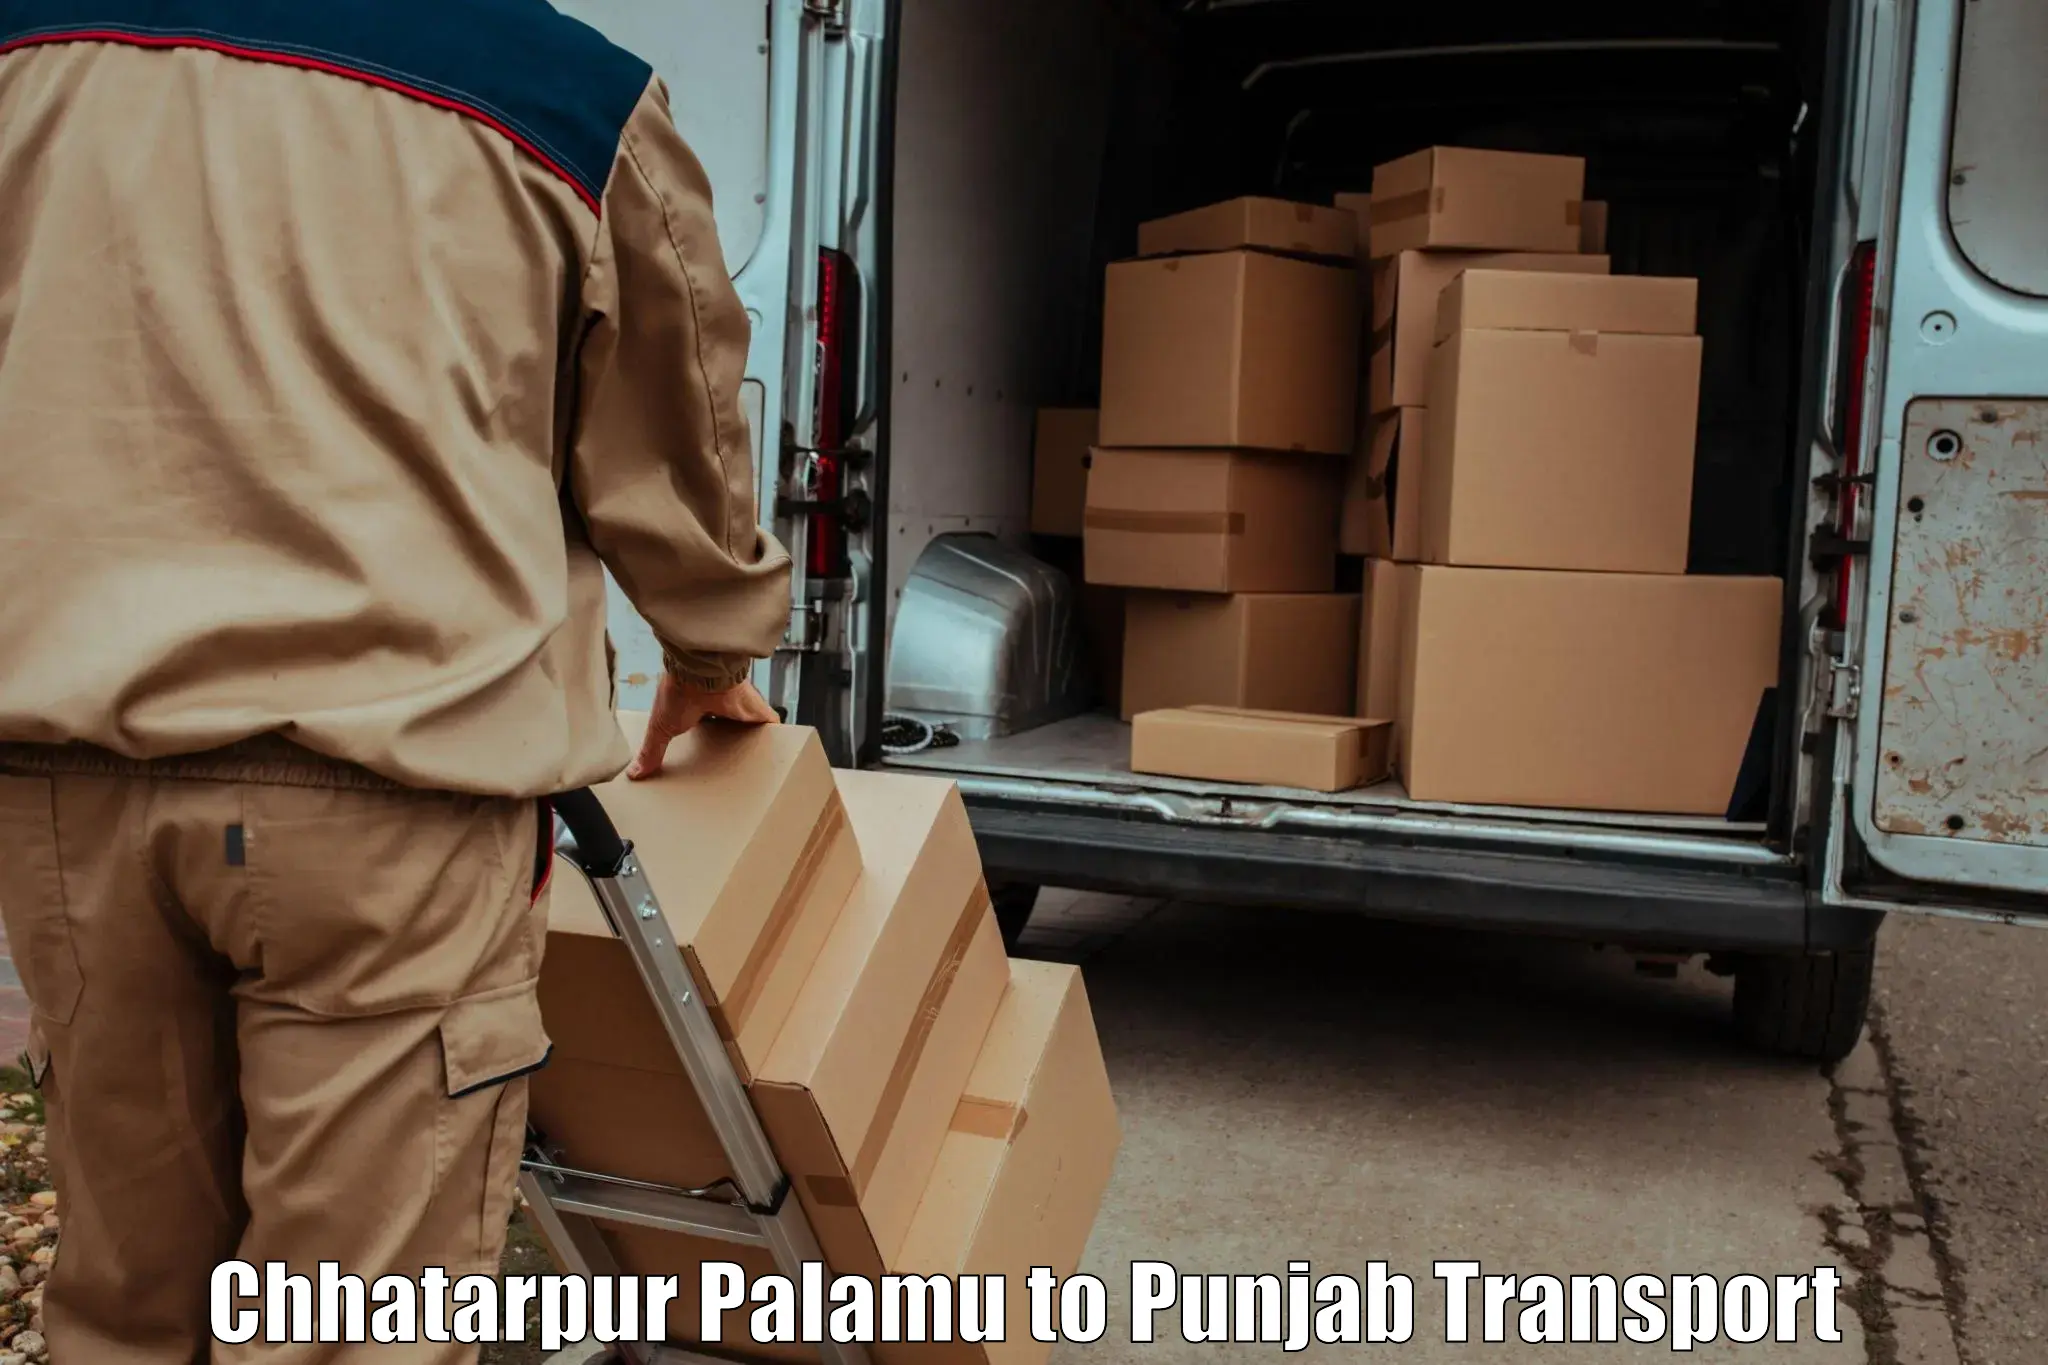 Parcel transport services Chhatarpur Palamu to Nawanshahr